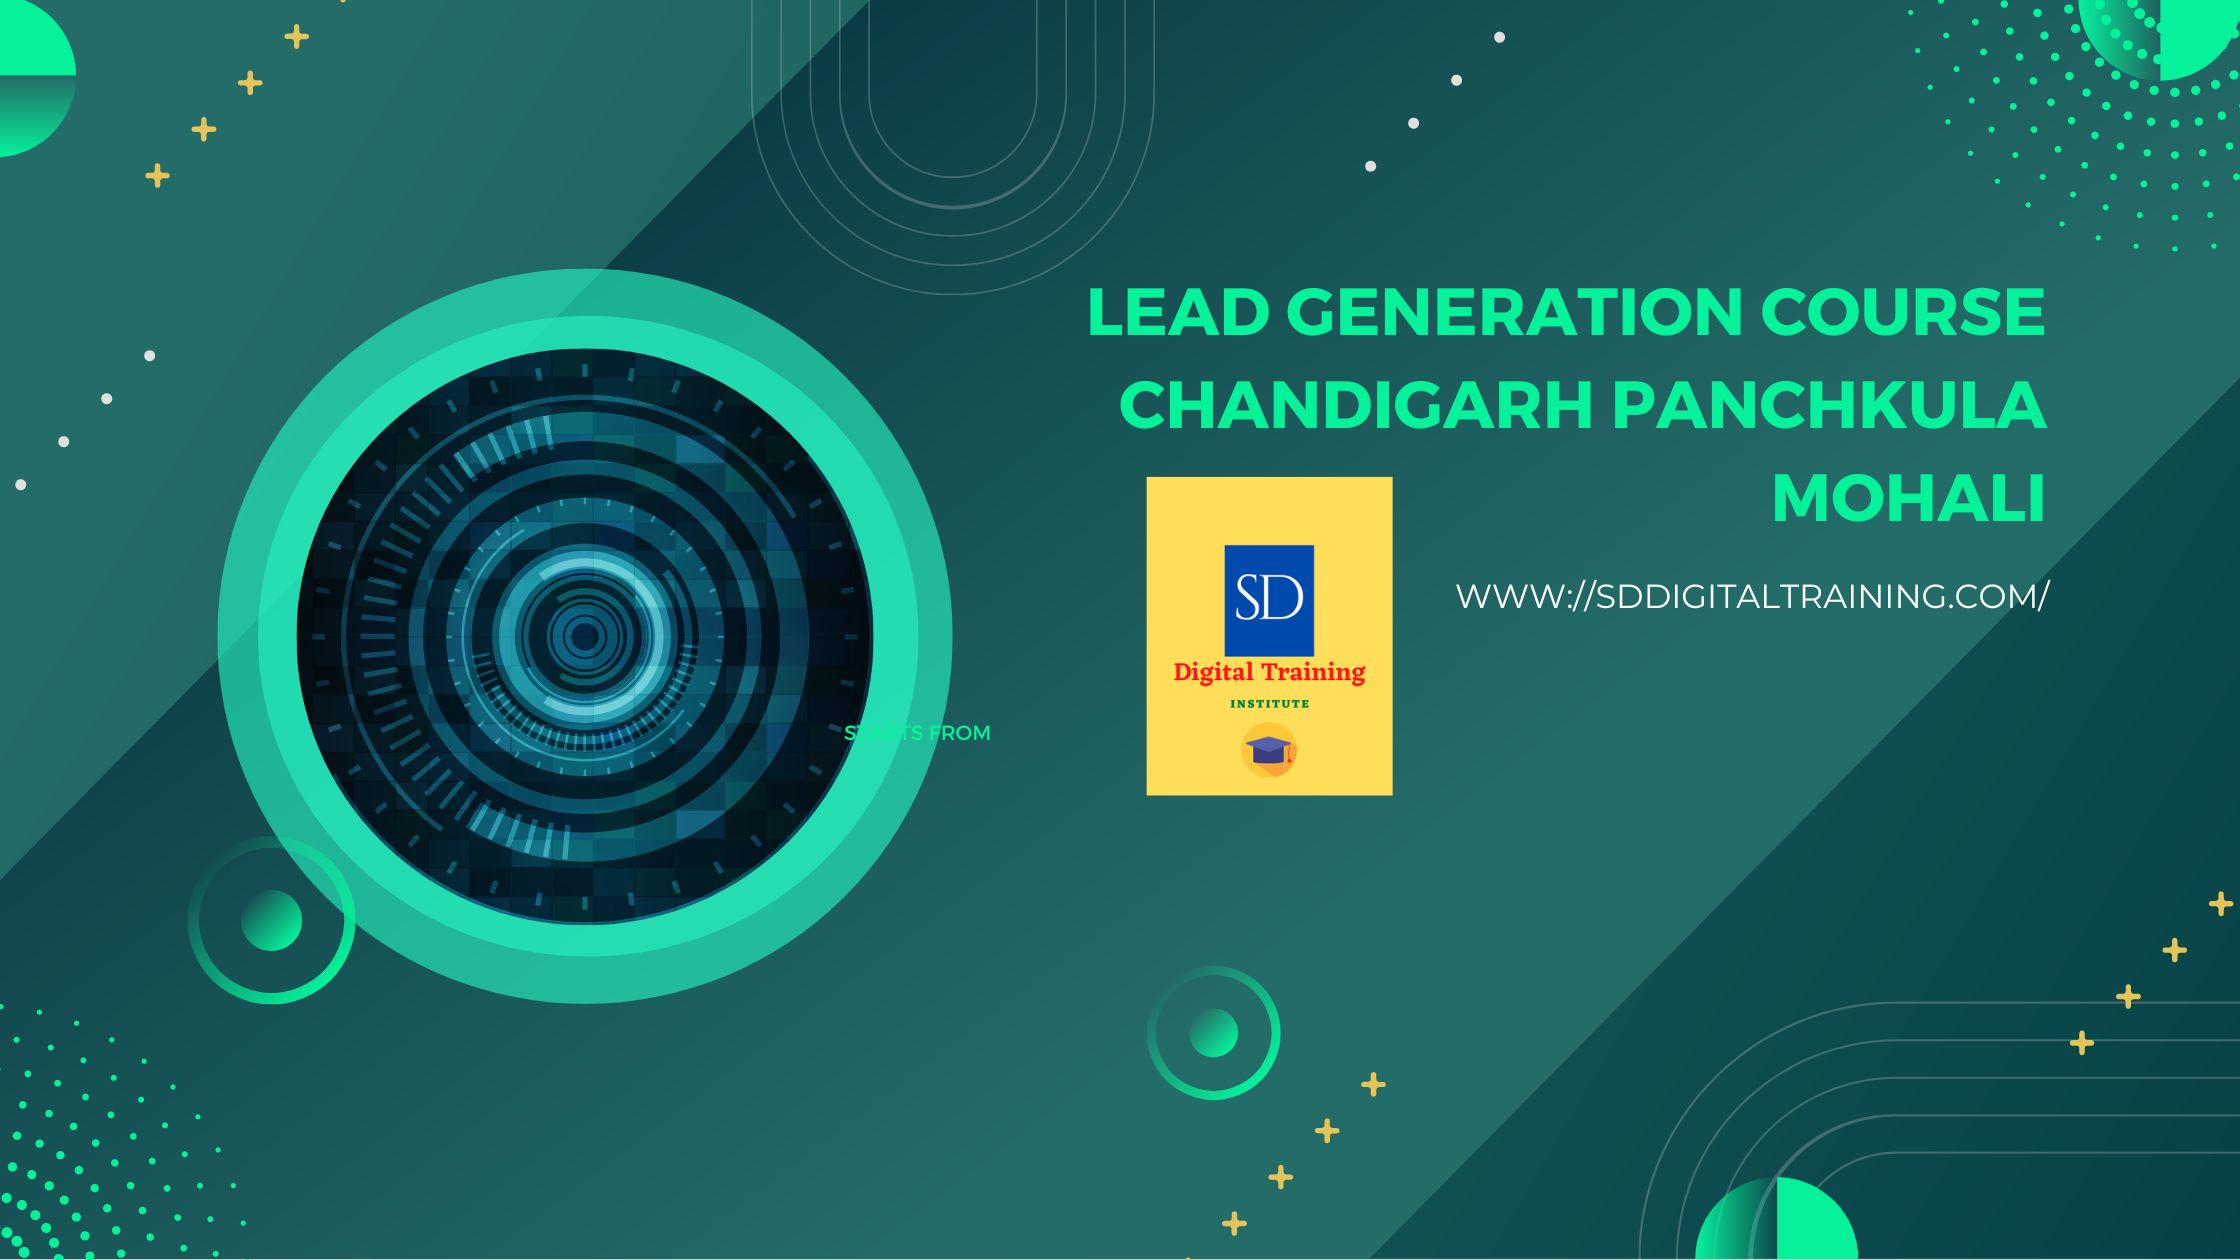 Lead Generation Course Chandigarh Panchkula Mohali